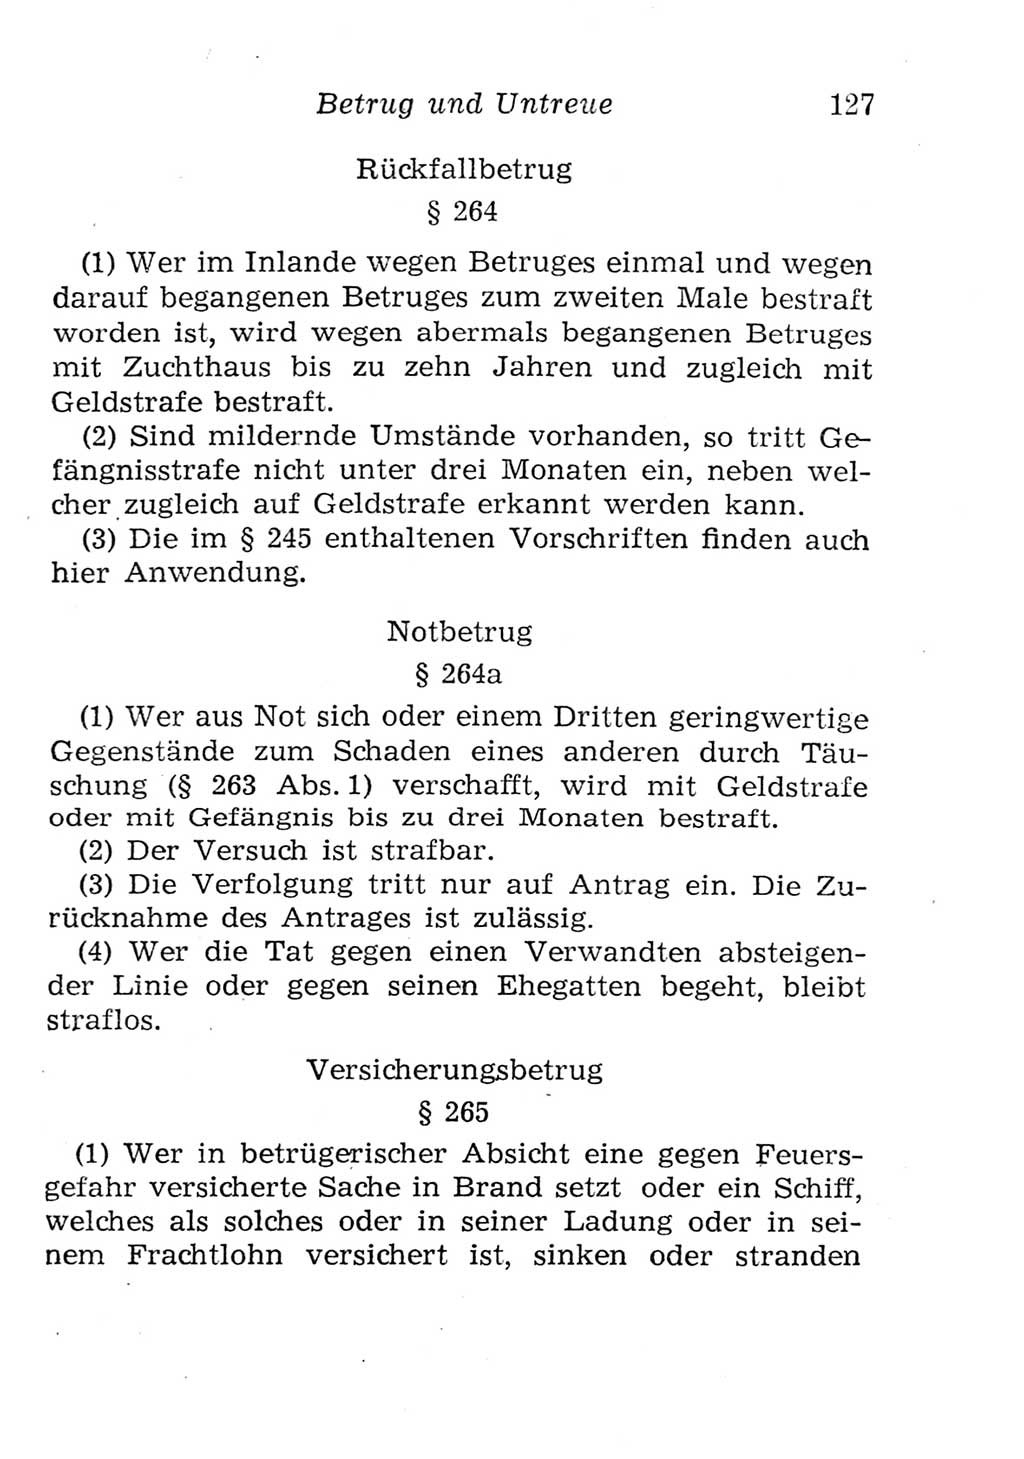 Strafgesetzbuch (StGB) und andere Strafgesetze [Deutsche Demokratische Republik (DDR)] 1957, Seite 127 (StGB Strafges. DDR 1957, S. 127)